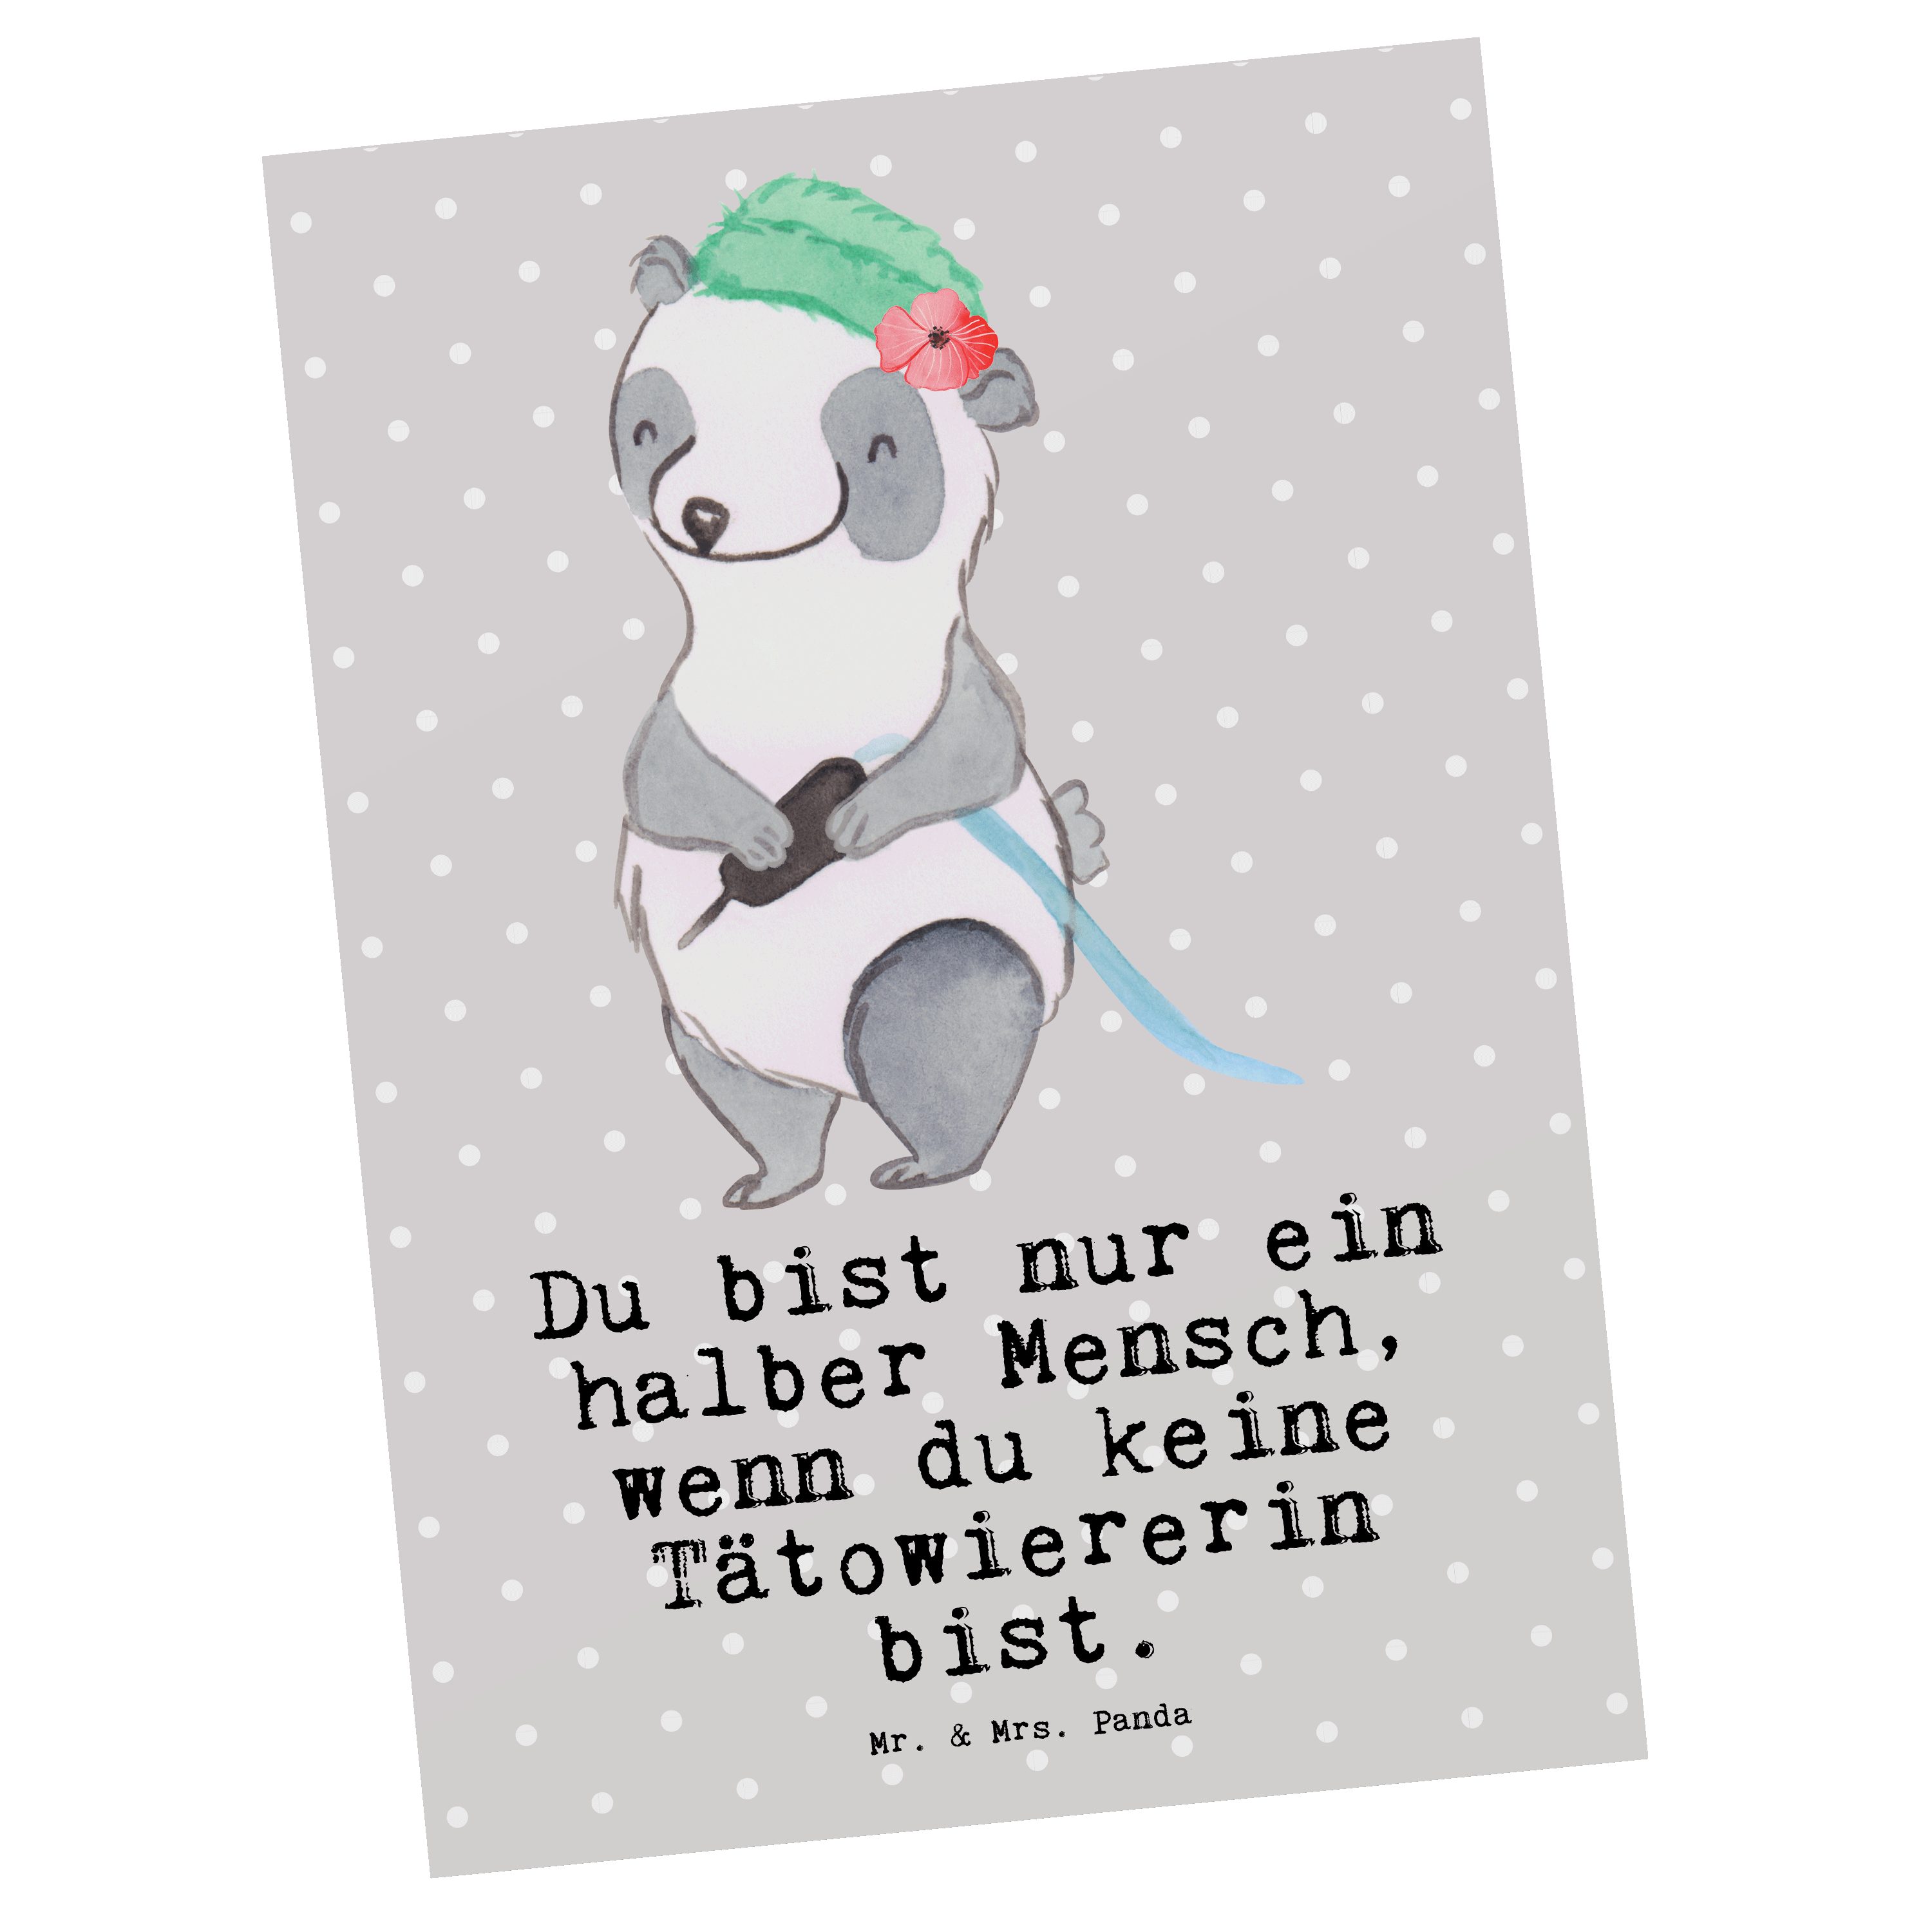 Grau Pastell Mitarbeiter, Panda & Herz Tätowiererin Geschen Geschenk, Mrs. - Mr. - Postkarte mit